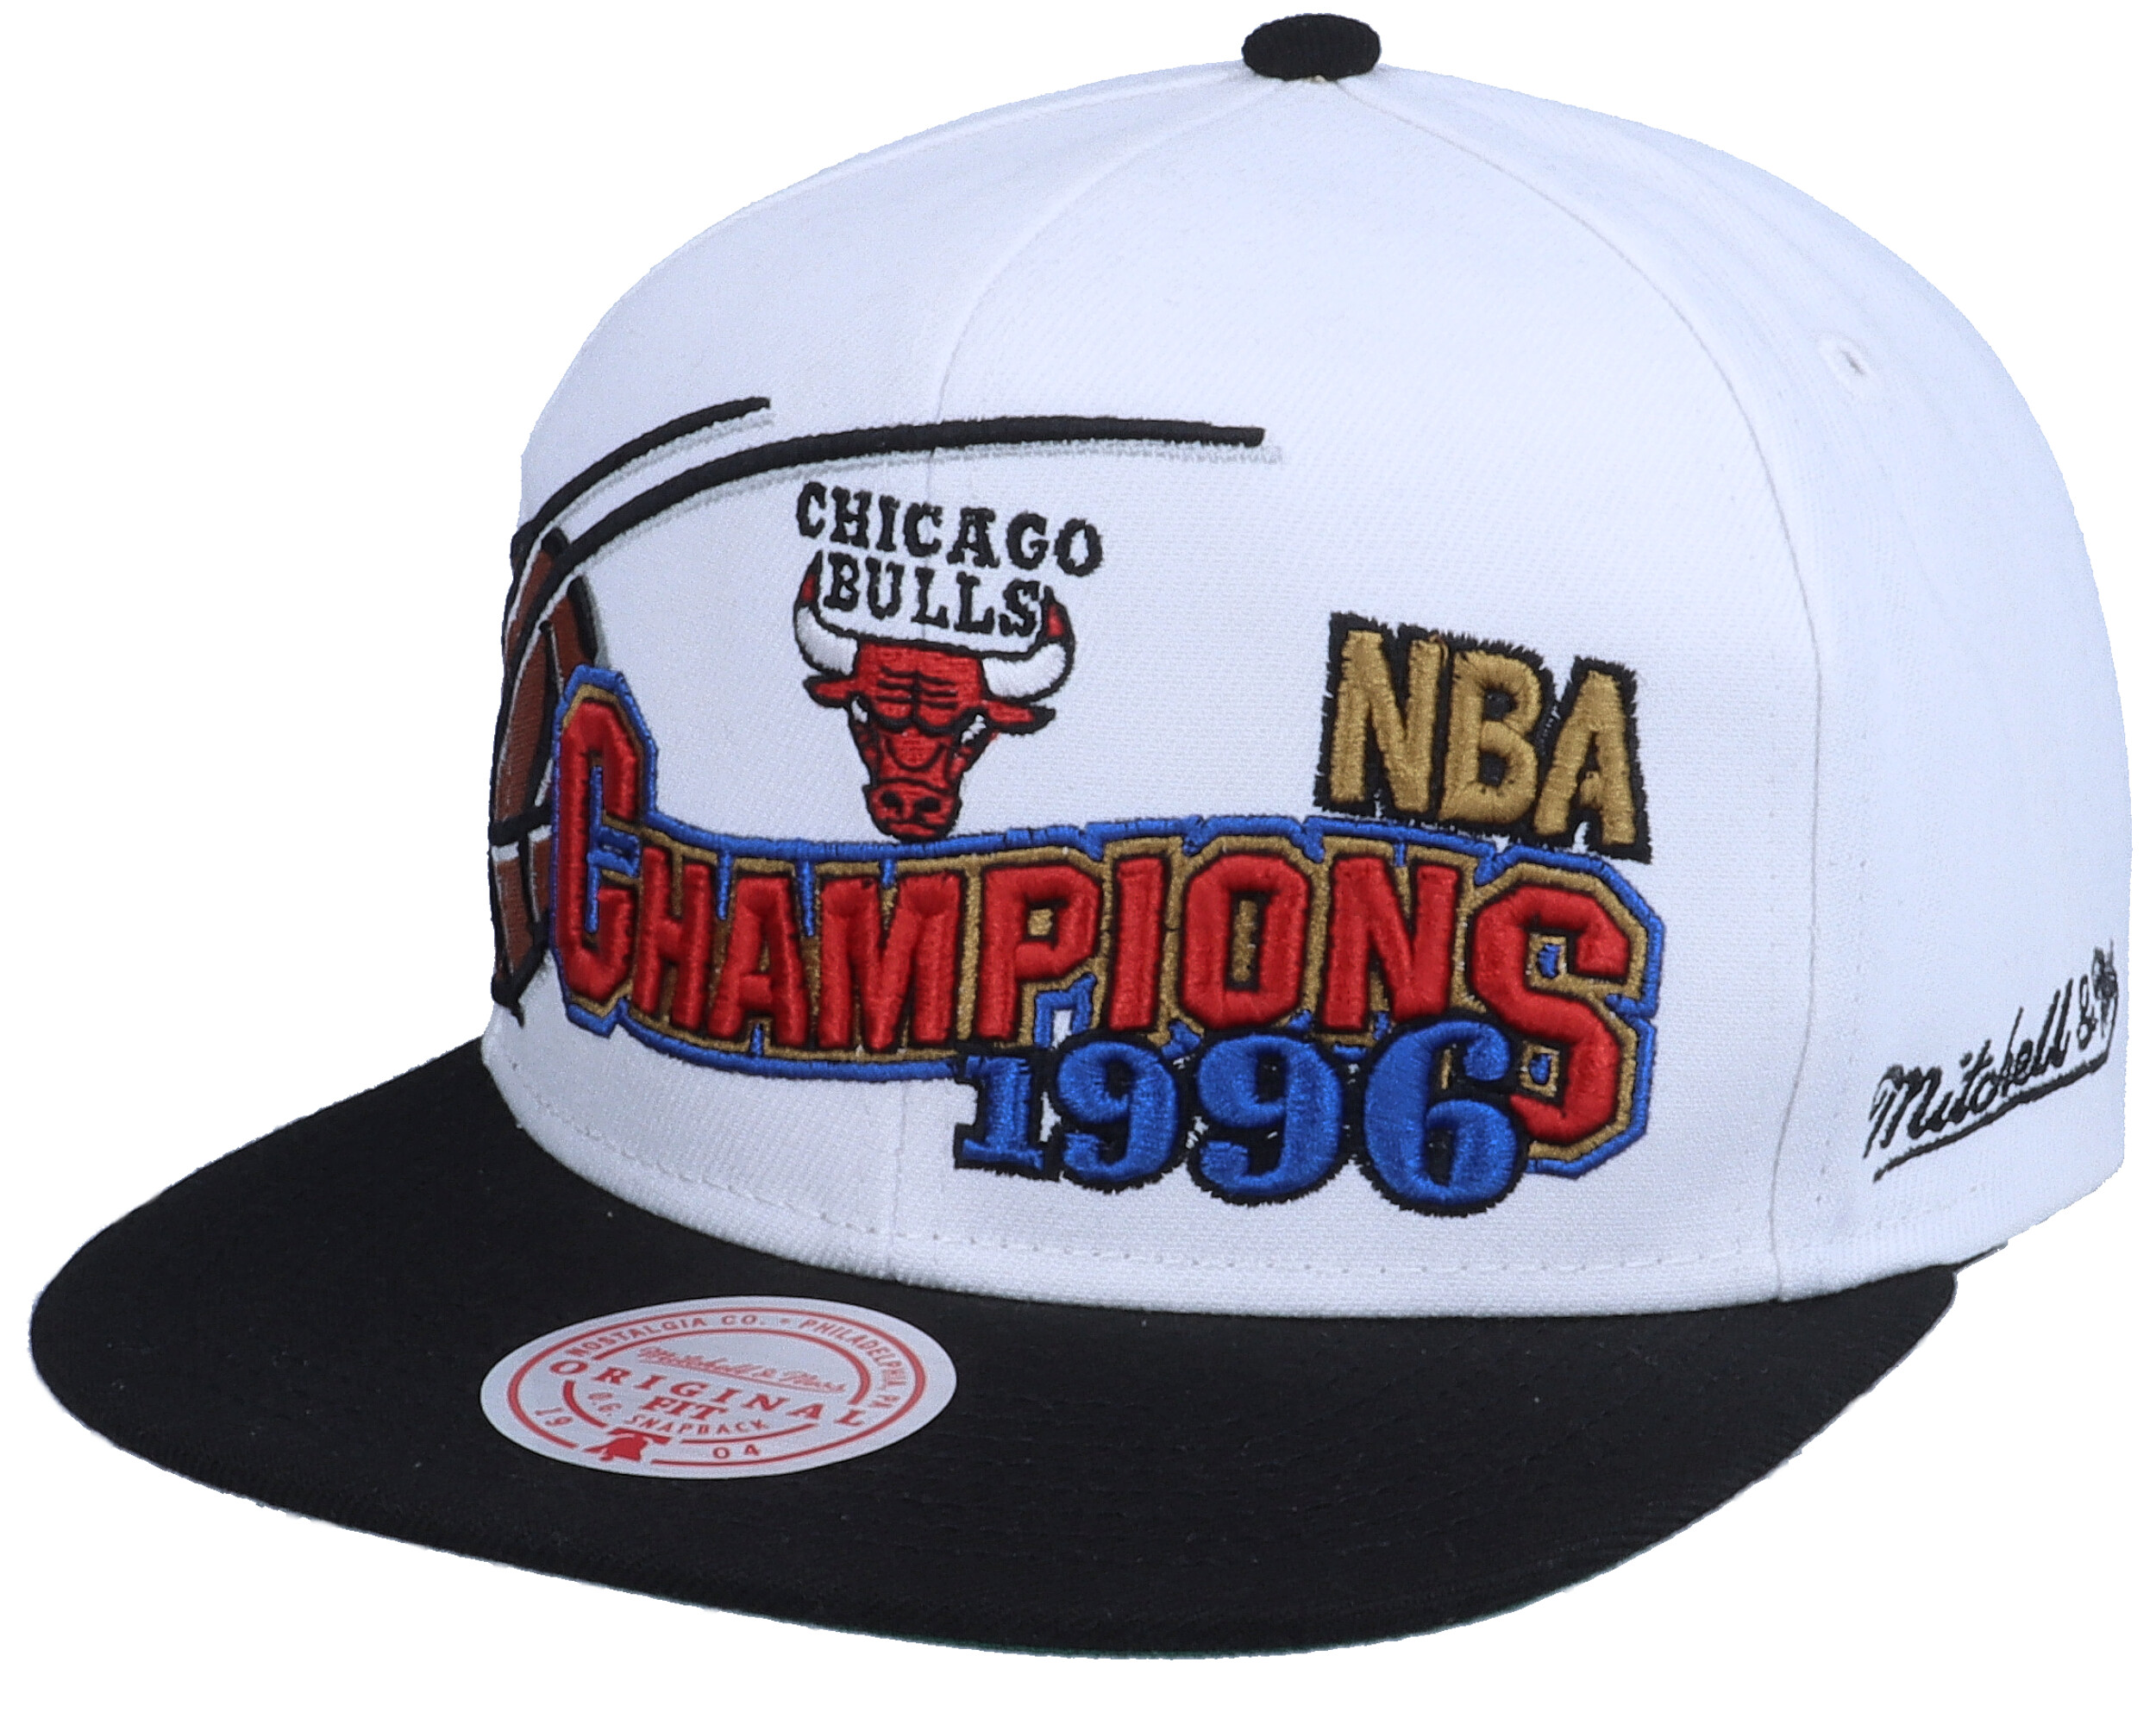 Accessories Hats & Caps Baseball & Trucker Caps Vintage 1996 Chicago Bulls NBA Championship Snapback Cap 